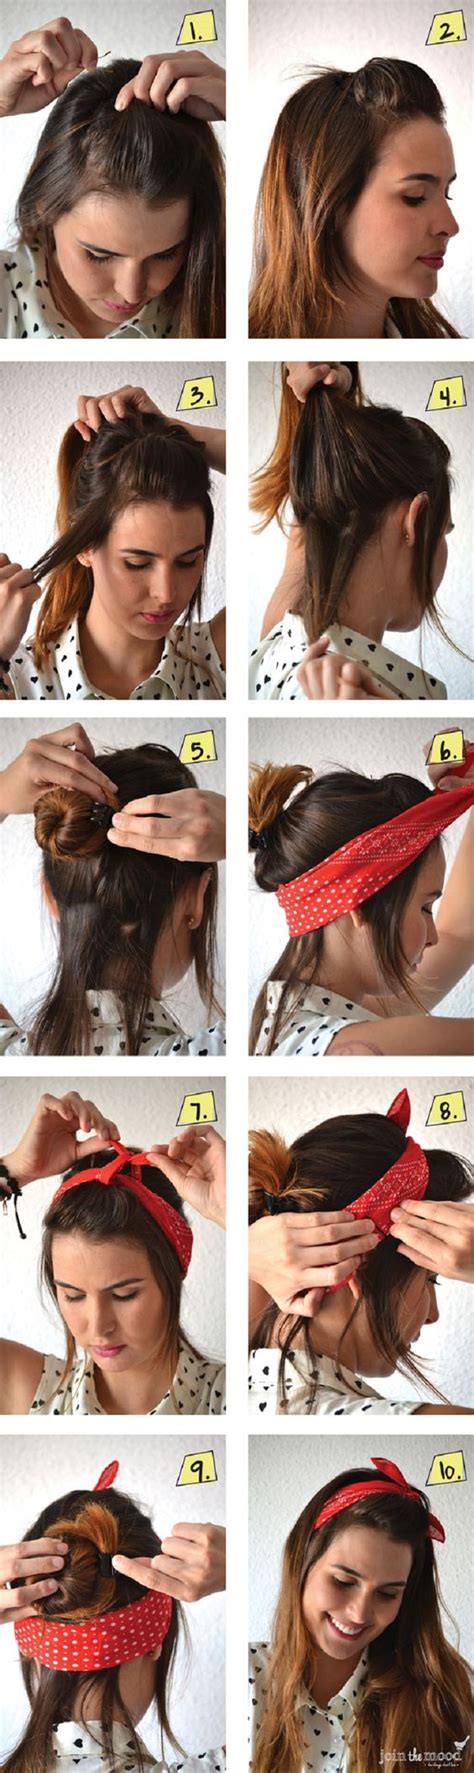 comment porter nouer et mettre un foulard cheveux